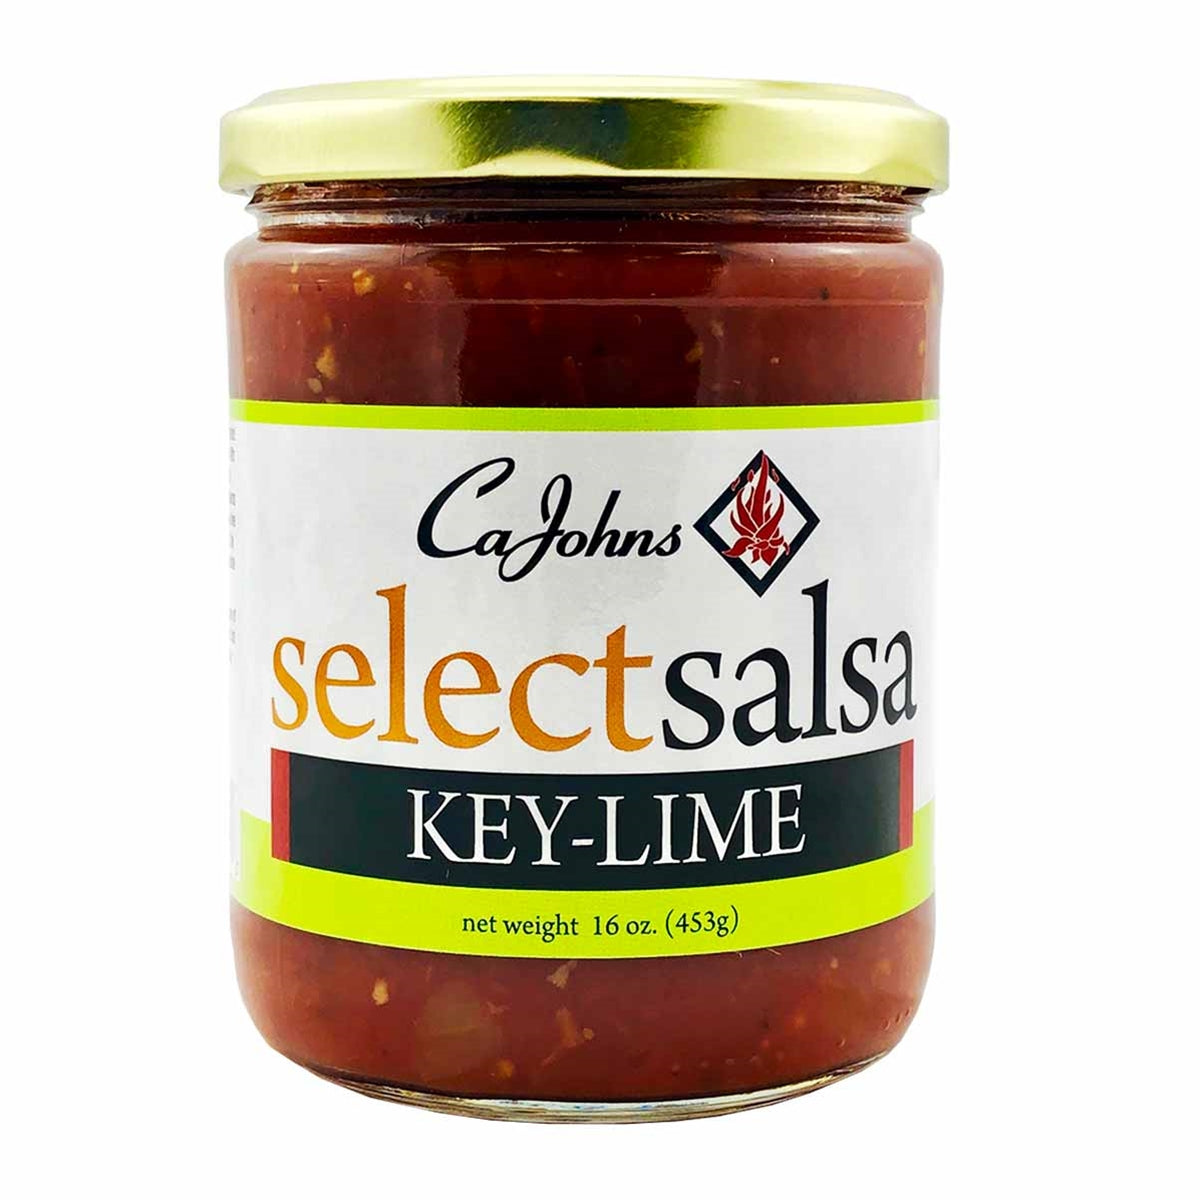 Cajohn's Key Lime Select Salsa